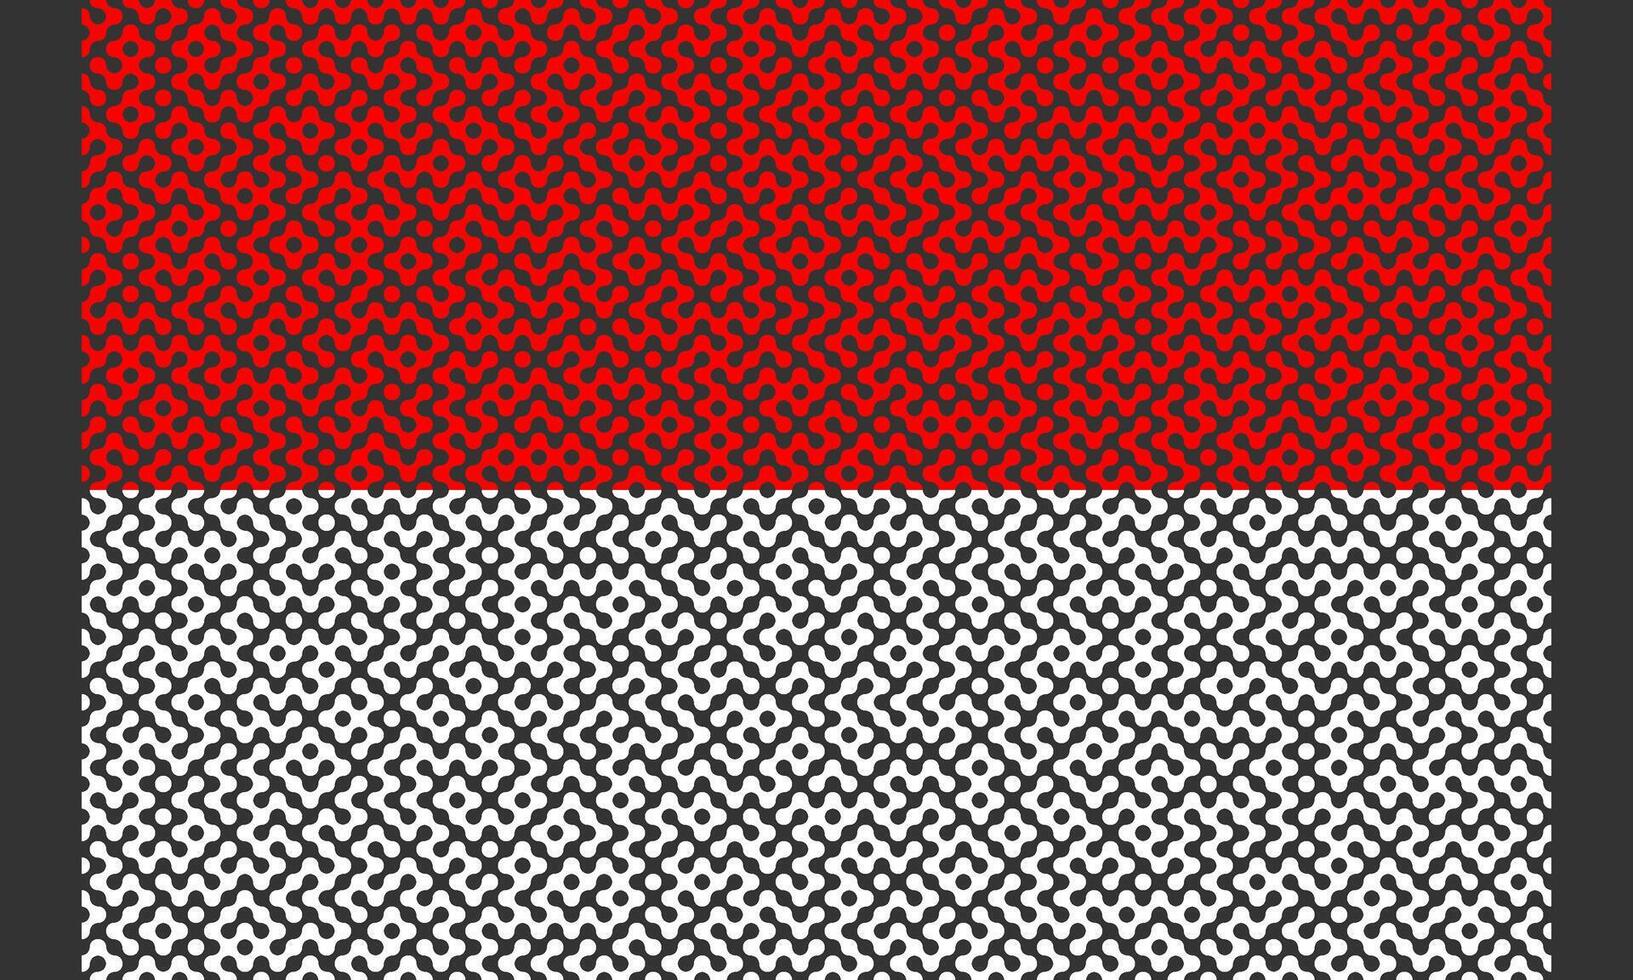 röd och vit indonesiska flagga labyrint mönster på svart bakgrund vektor